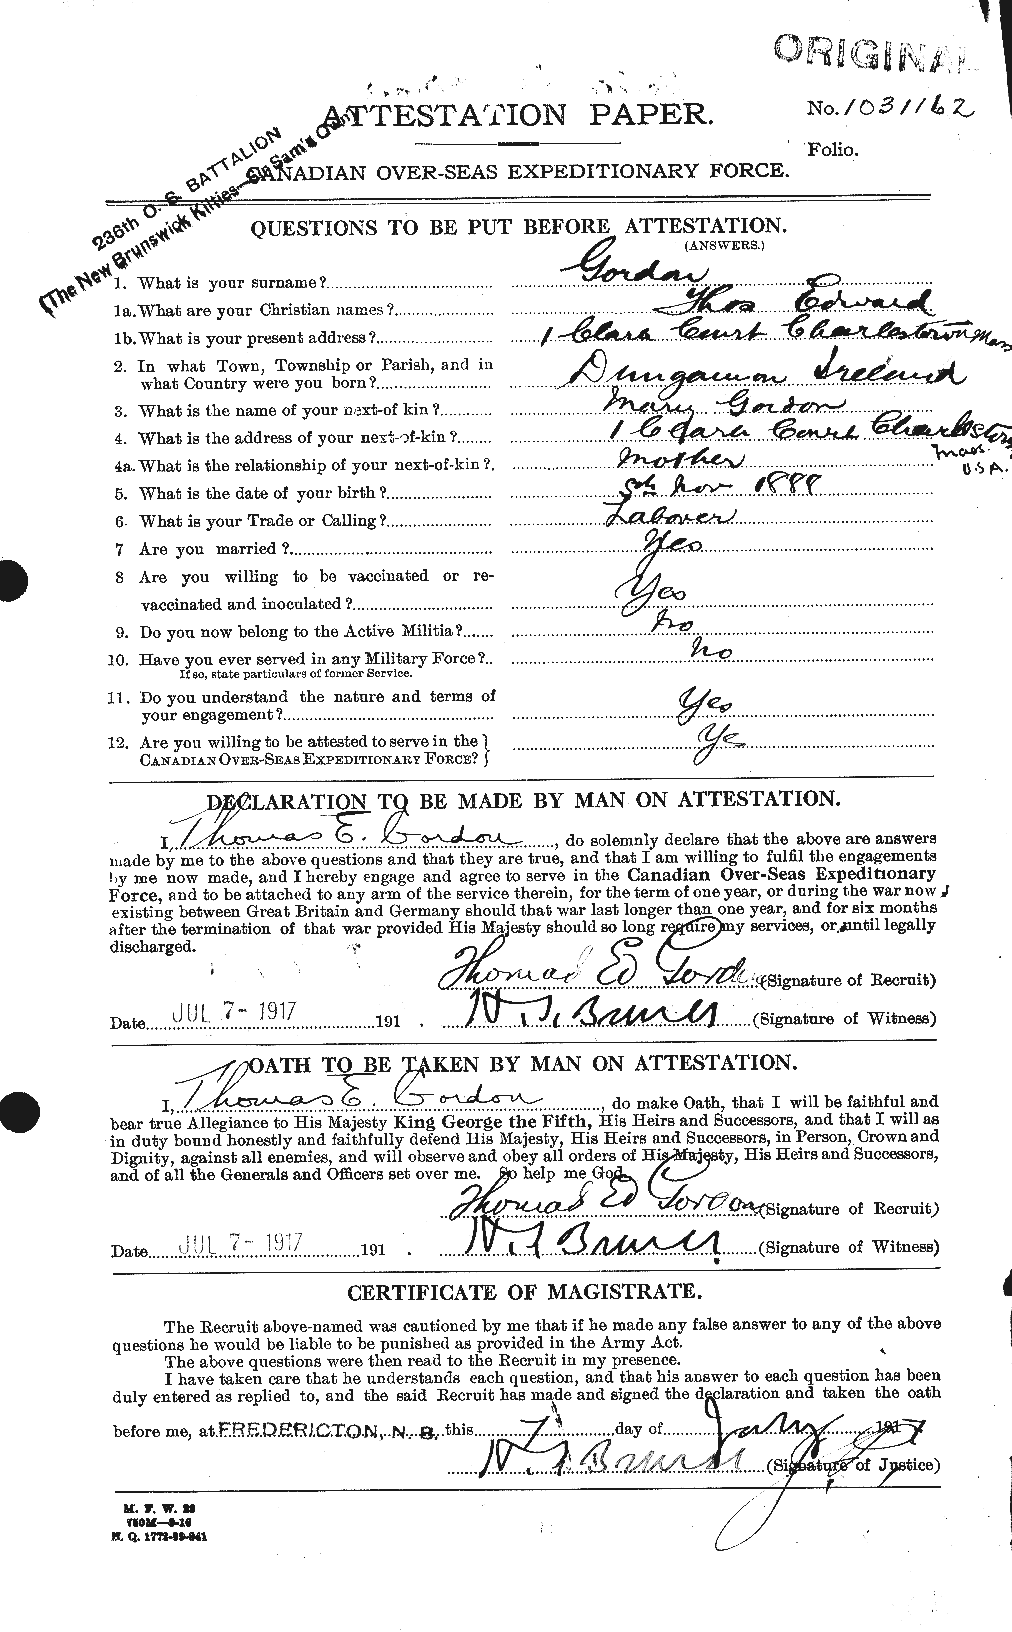 Dossiers du Personnel de la Première Guerre mondiale - CEC 355999a